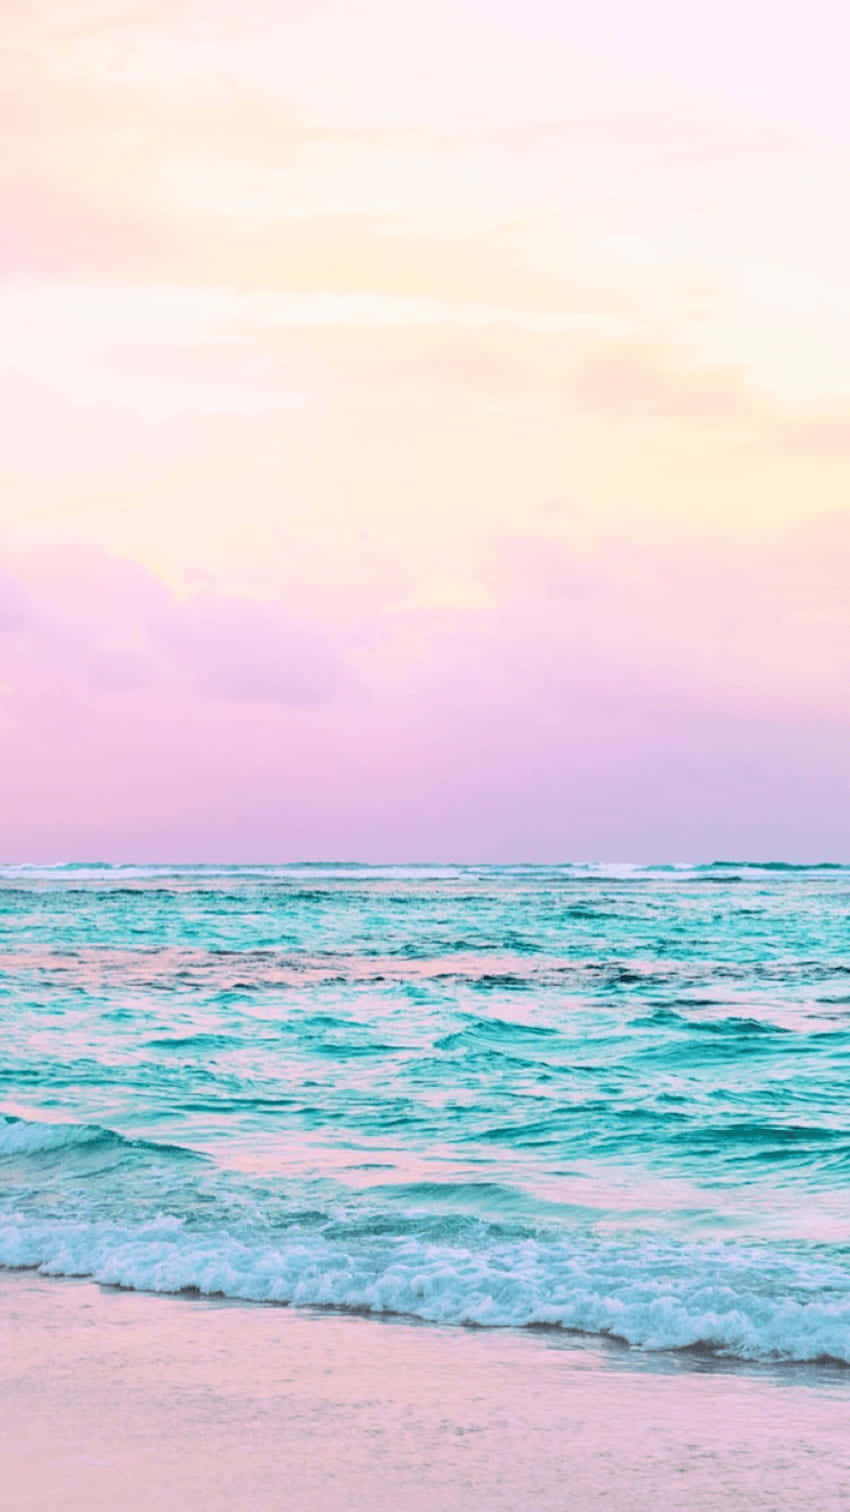 Hierist Ein Blick Auf Natürliche Schönheit Mit Einer Ansicht Eines Hübschen Ozeans. Wallpaper